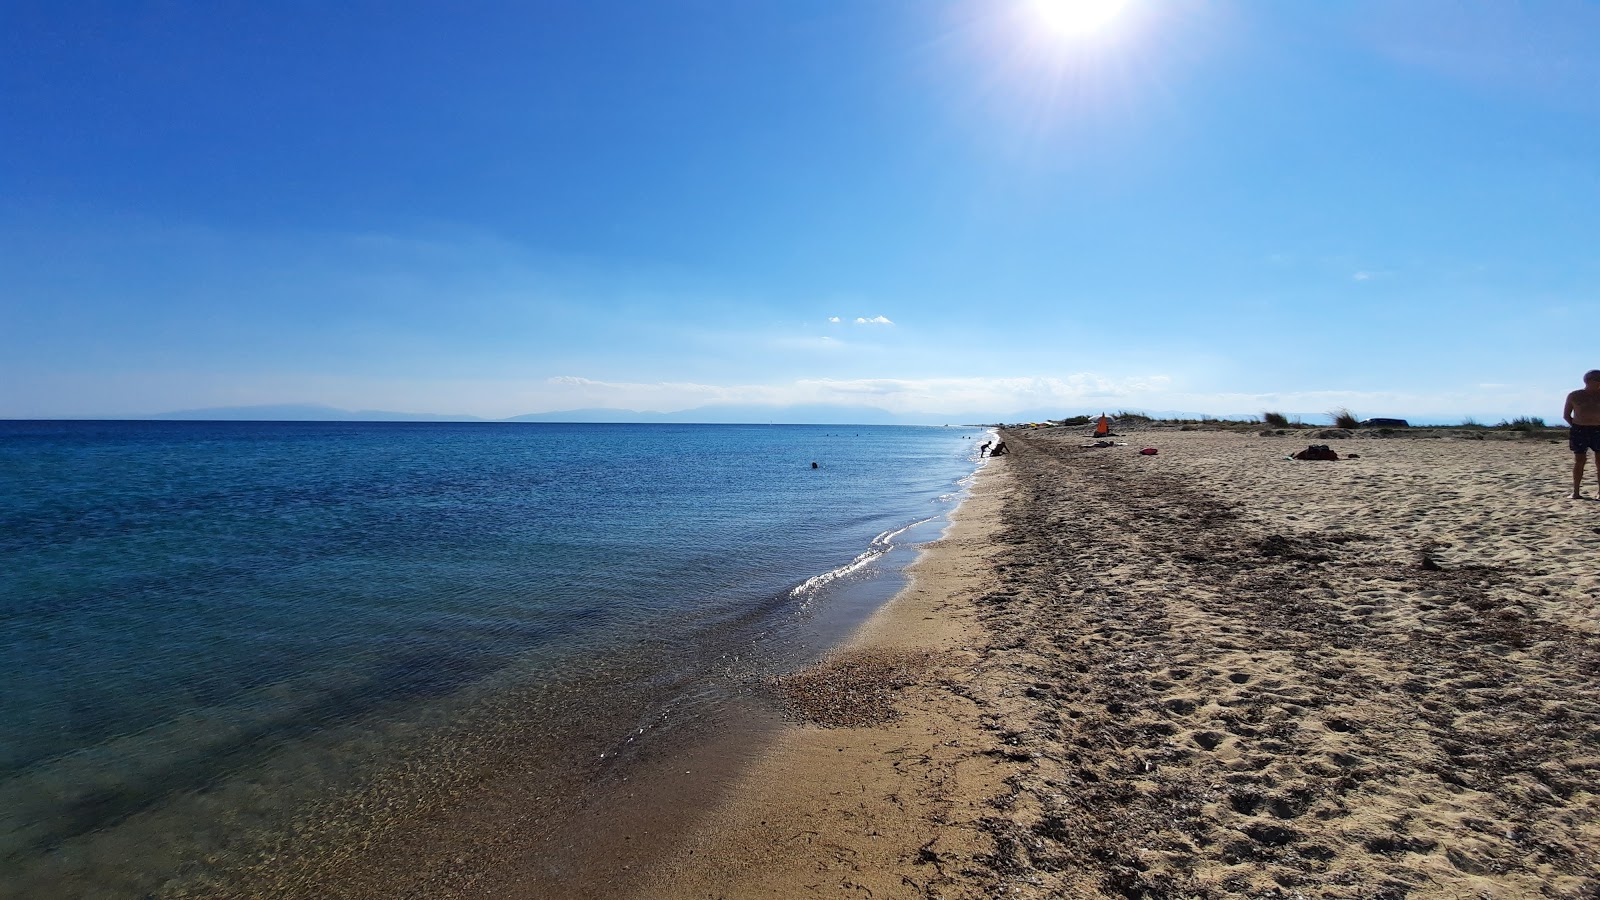 Zdjęcie Epanomi beach - popularne miejsce wśród znawców relaksu